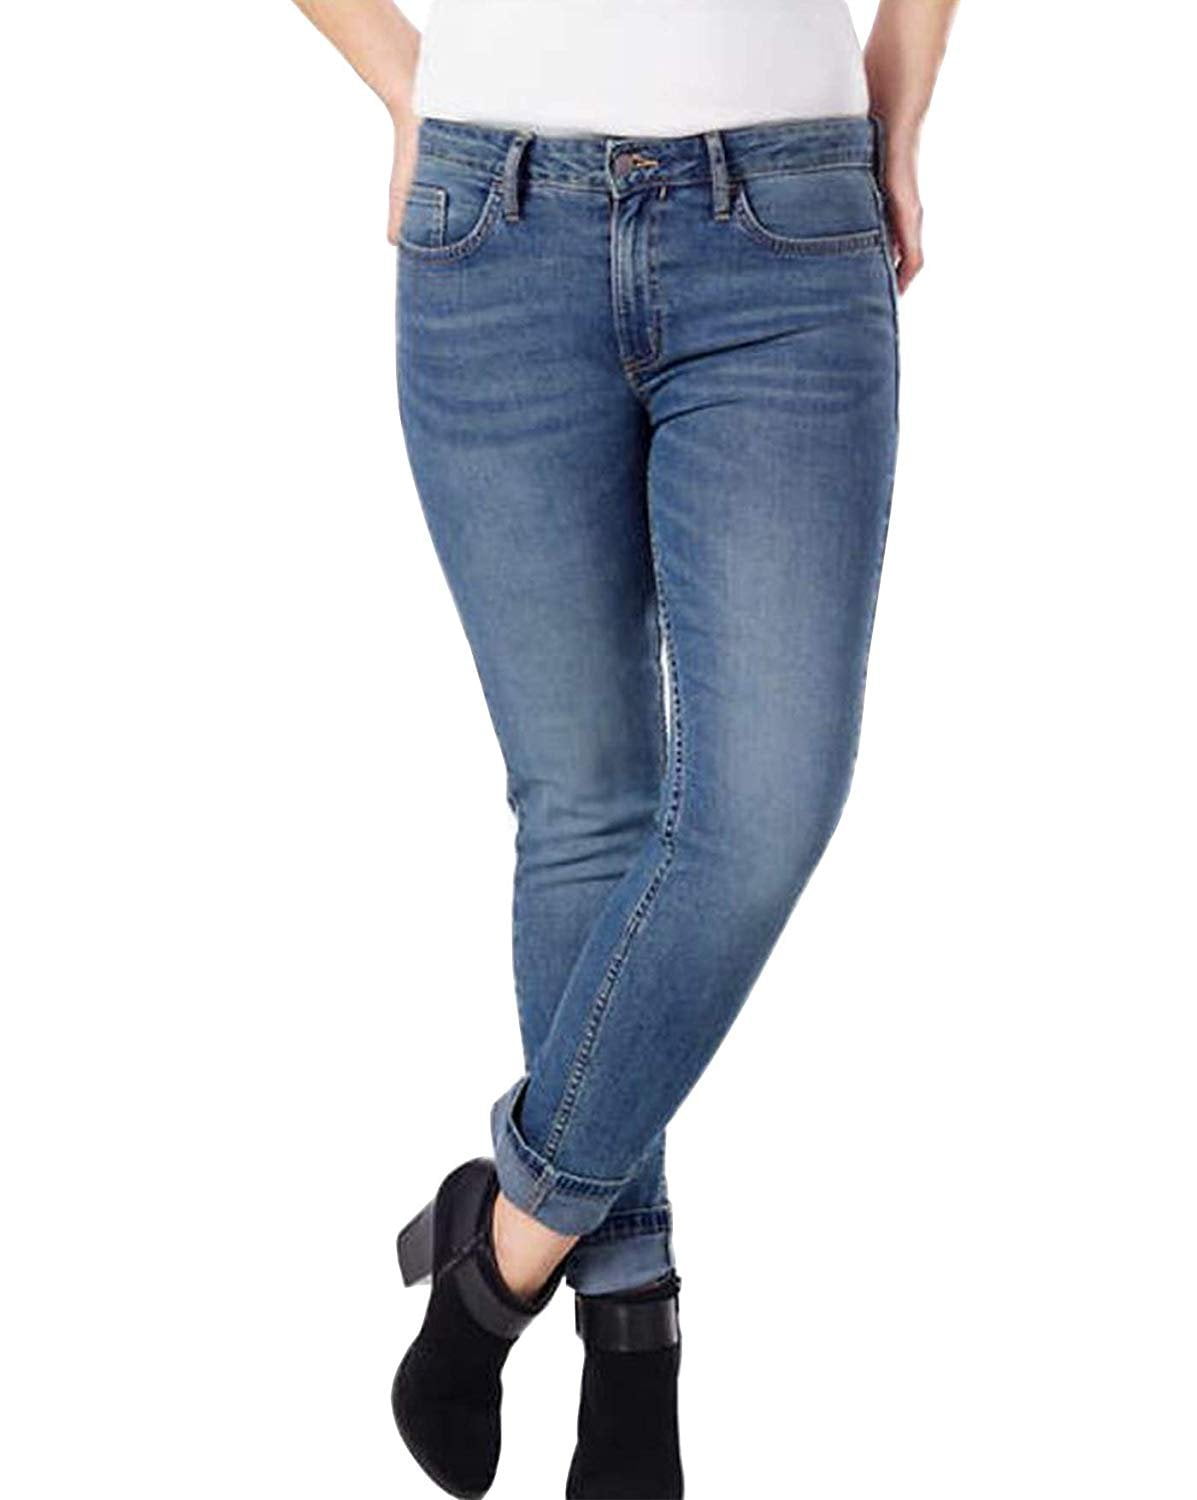 Calvin Klein Jeans - Calvin Klein Jeans Ladies' Slim Boyfriend Jeans, Light Blue (6) - Walmart